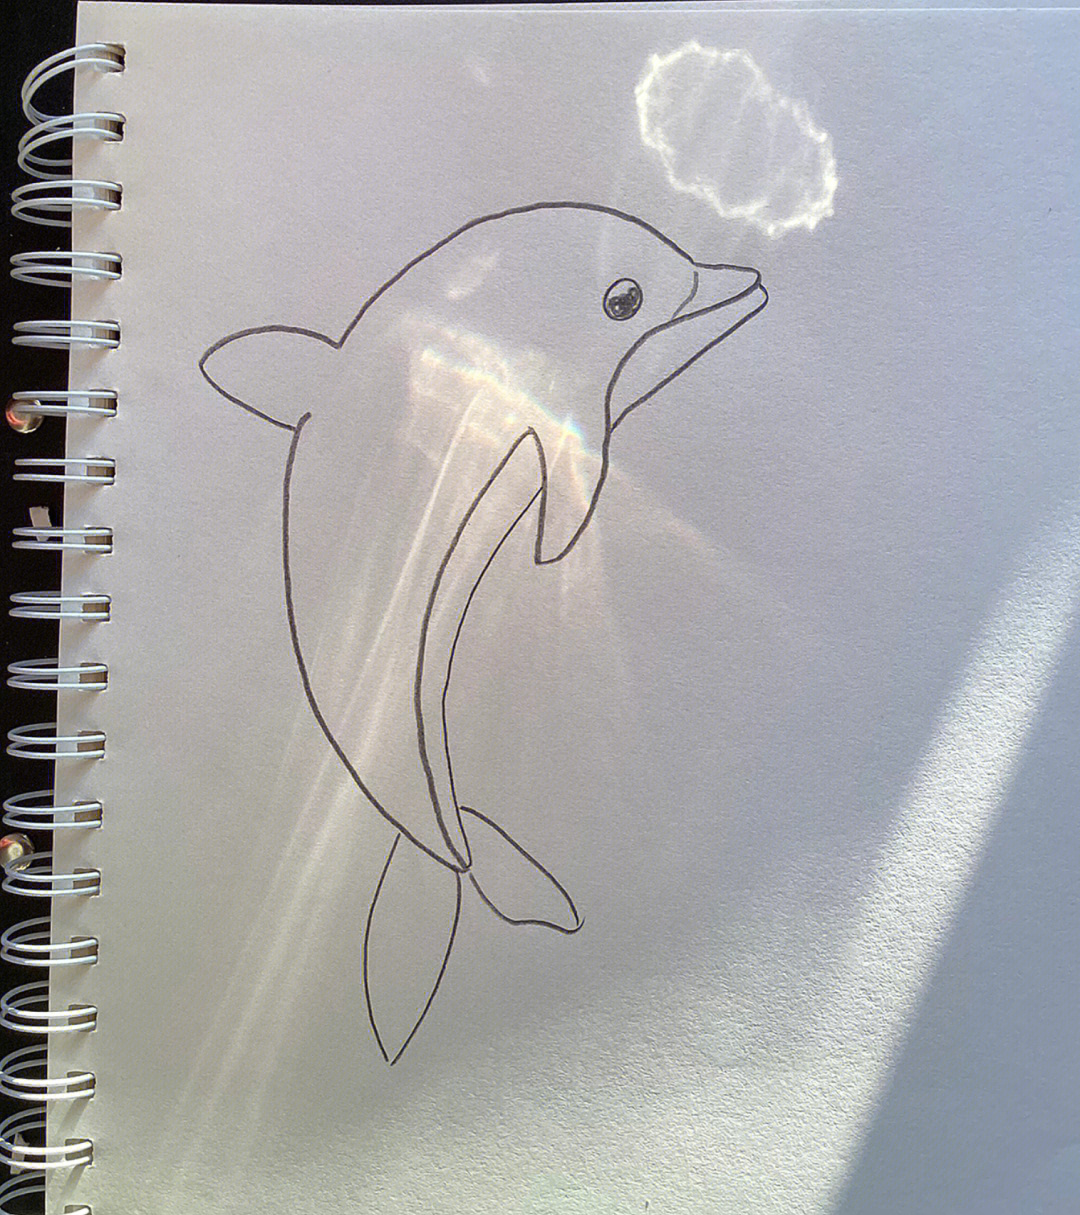 最简单的海豚简笔画图片